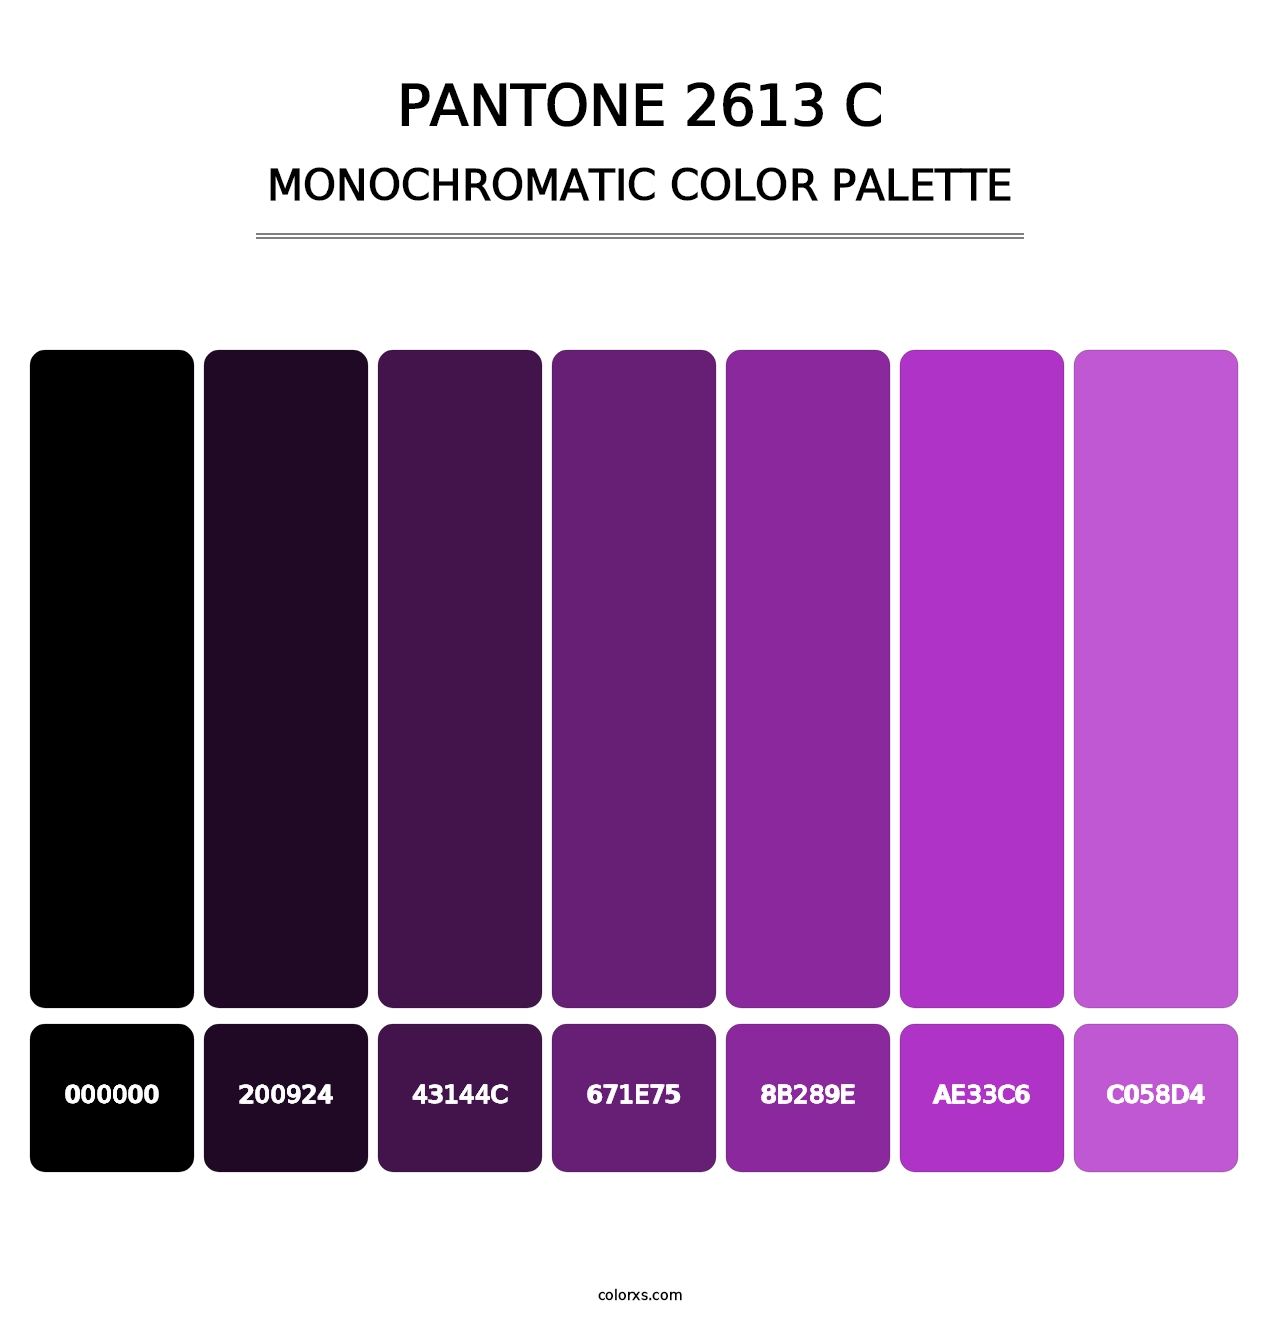 PANTONE 2613 C - Monochromatic Color Palette